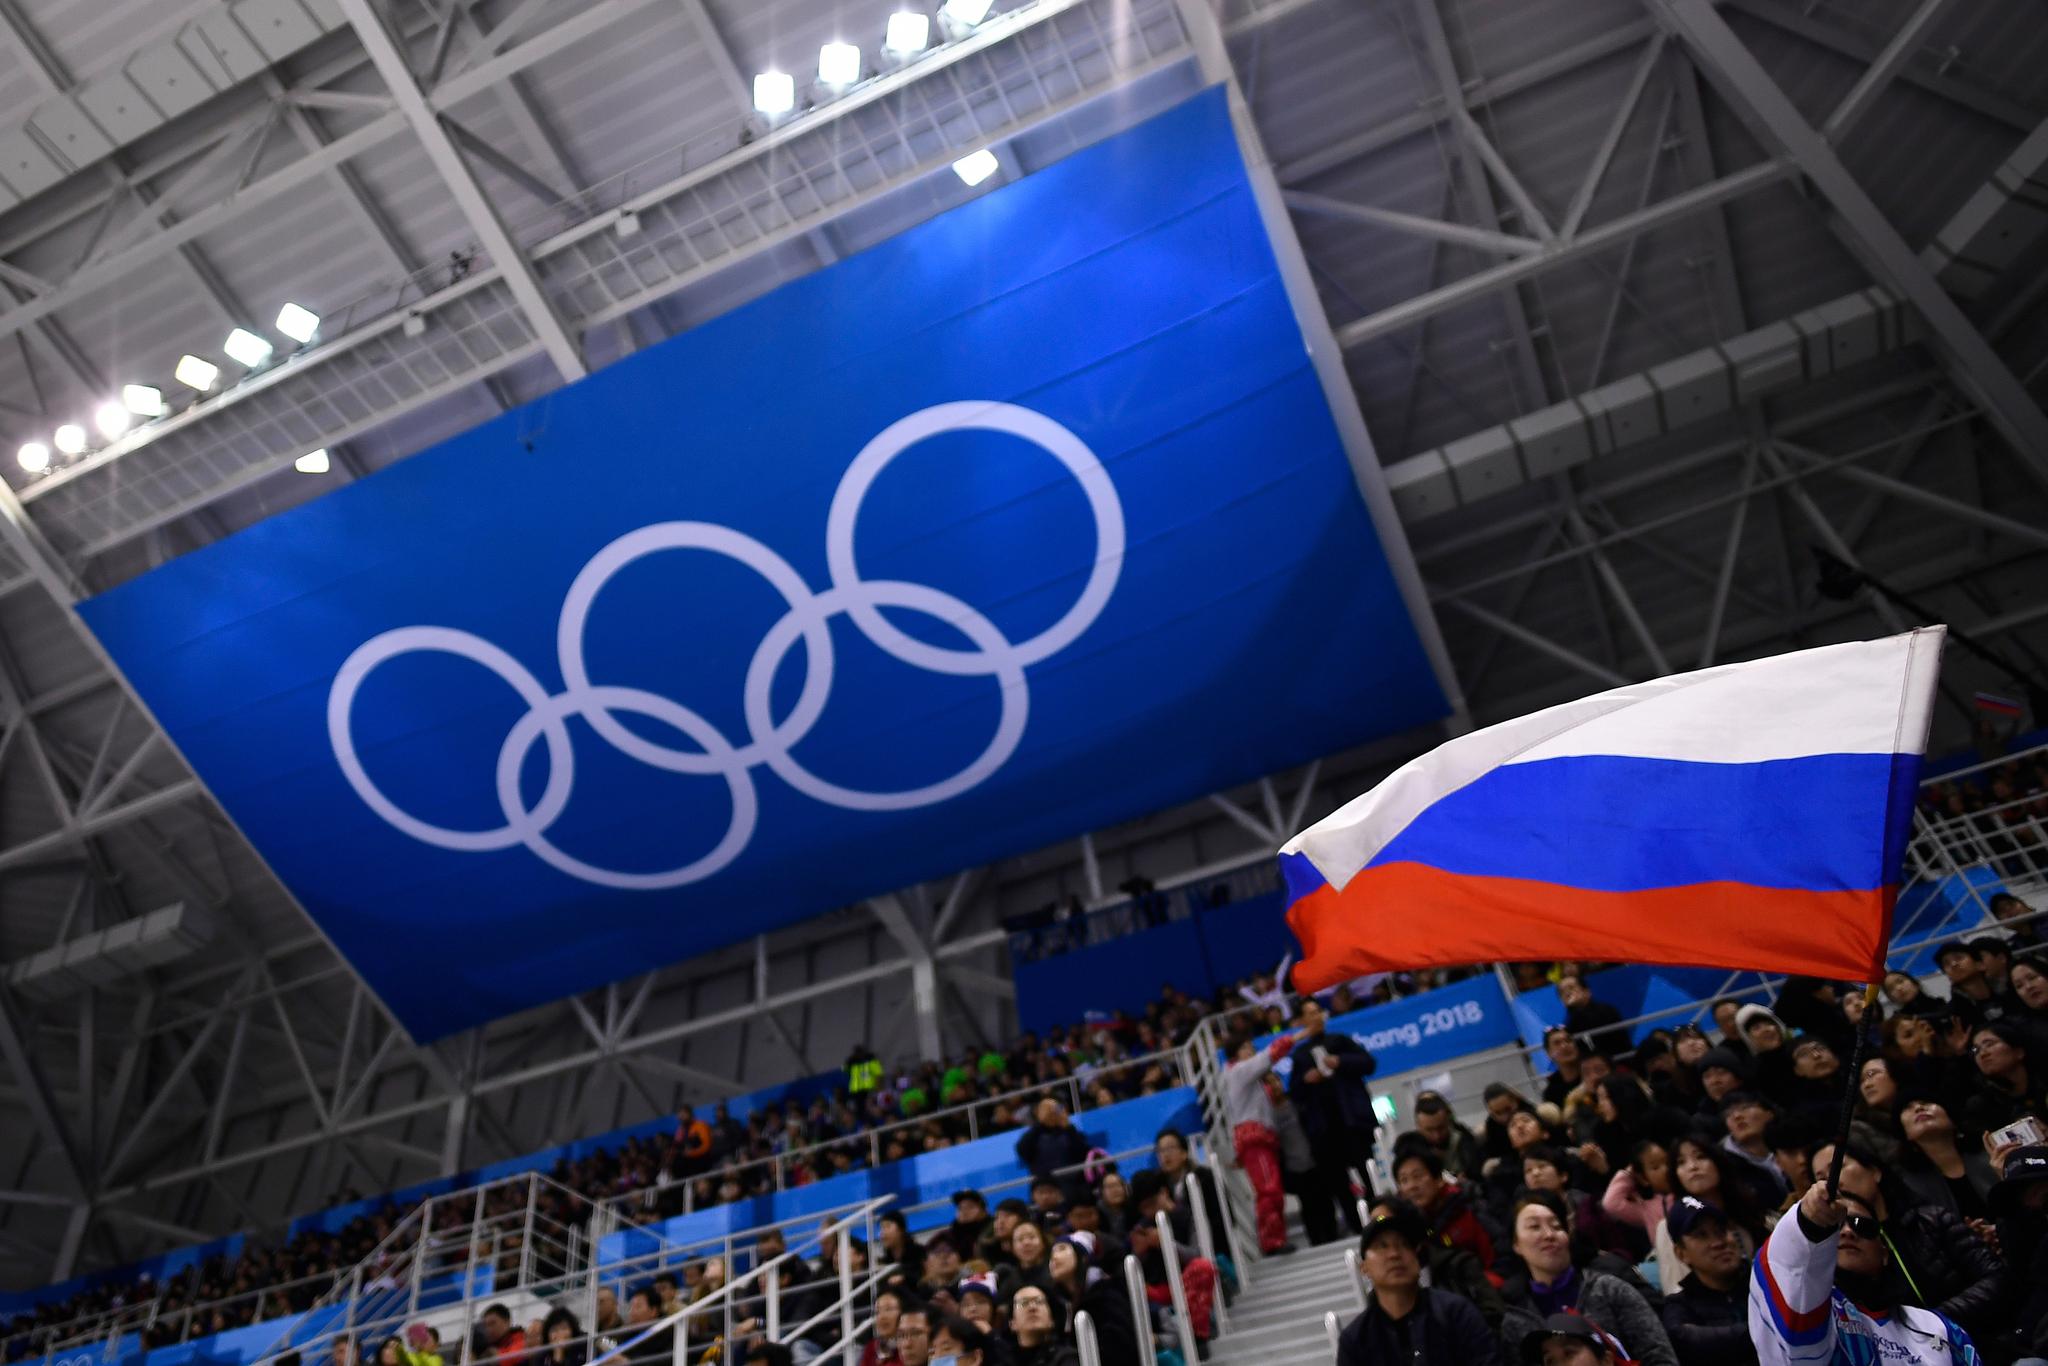 “Comitê Olímpico Russo” em Tóquio é piada de mau gosto